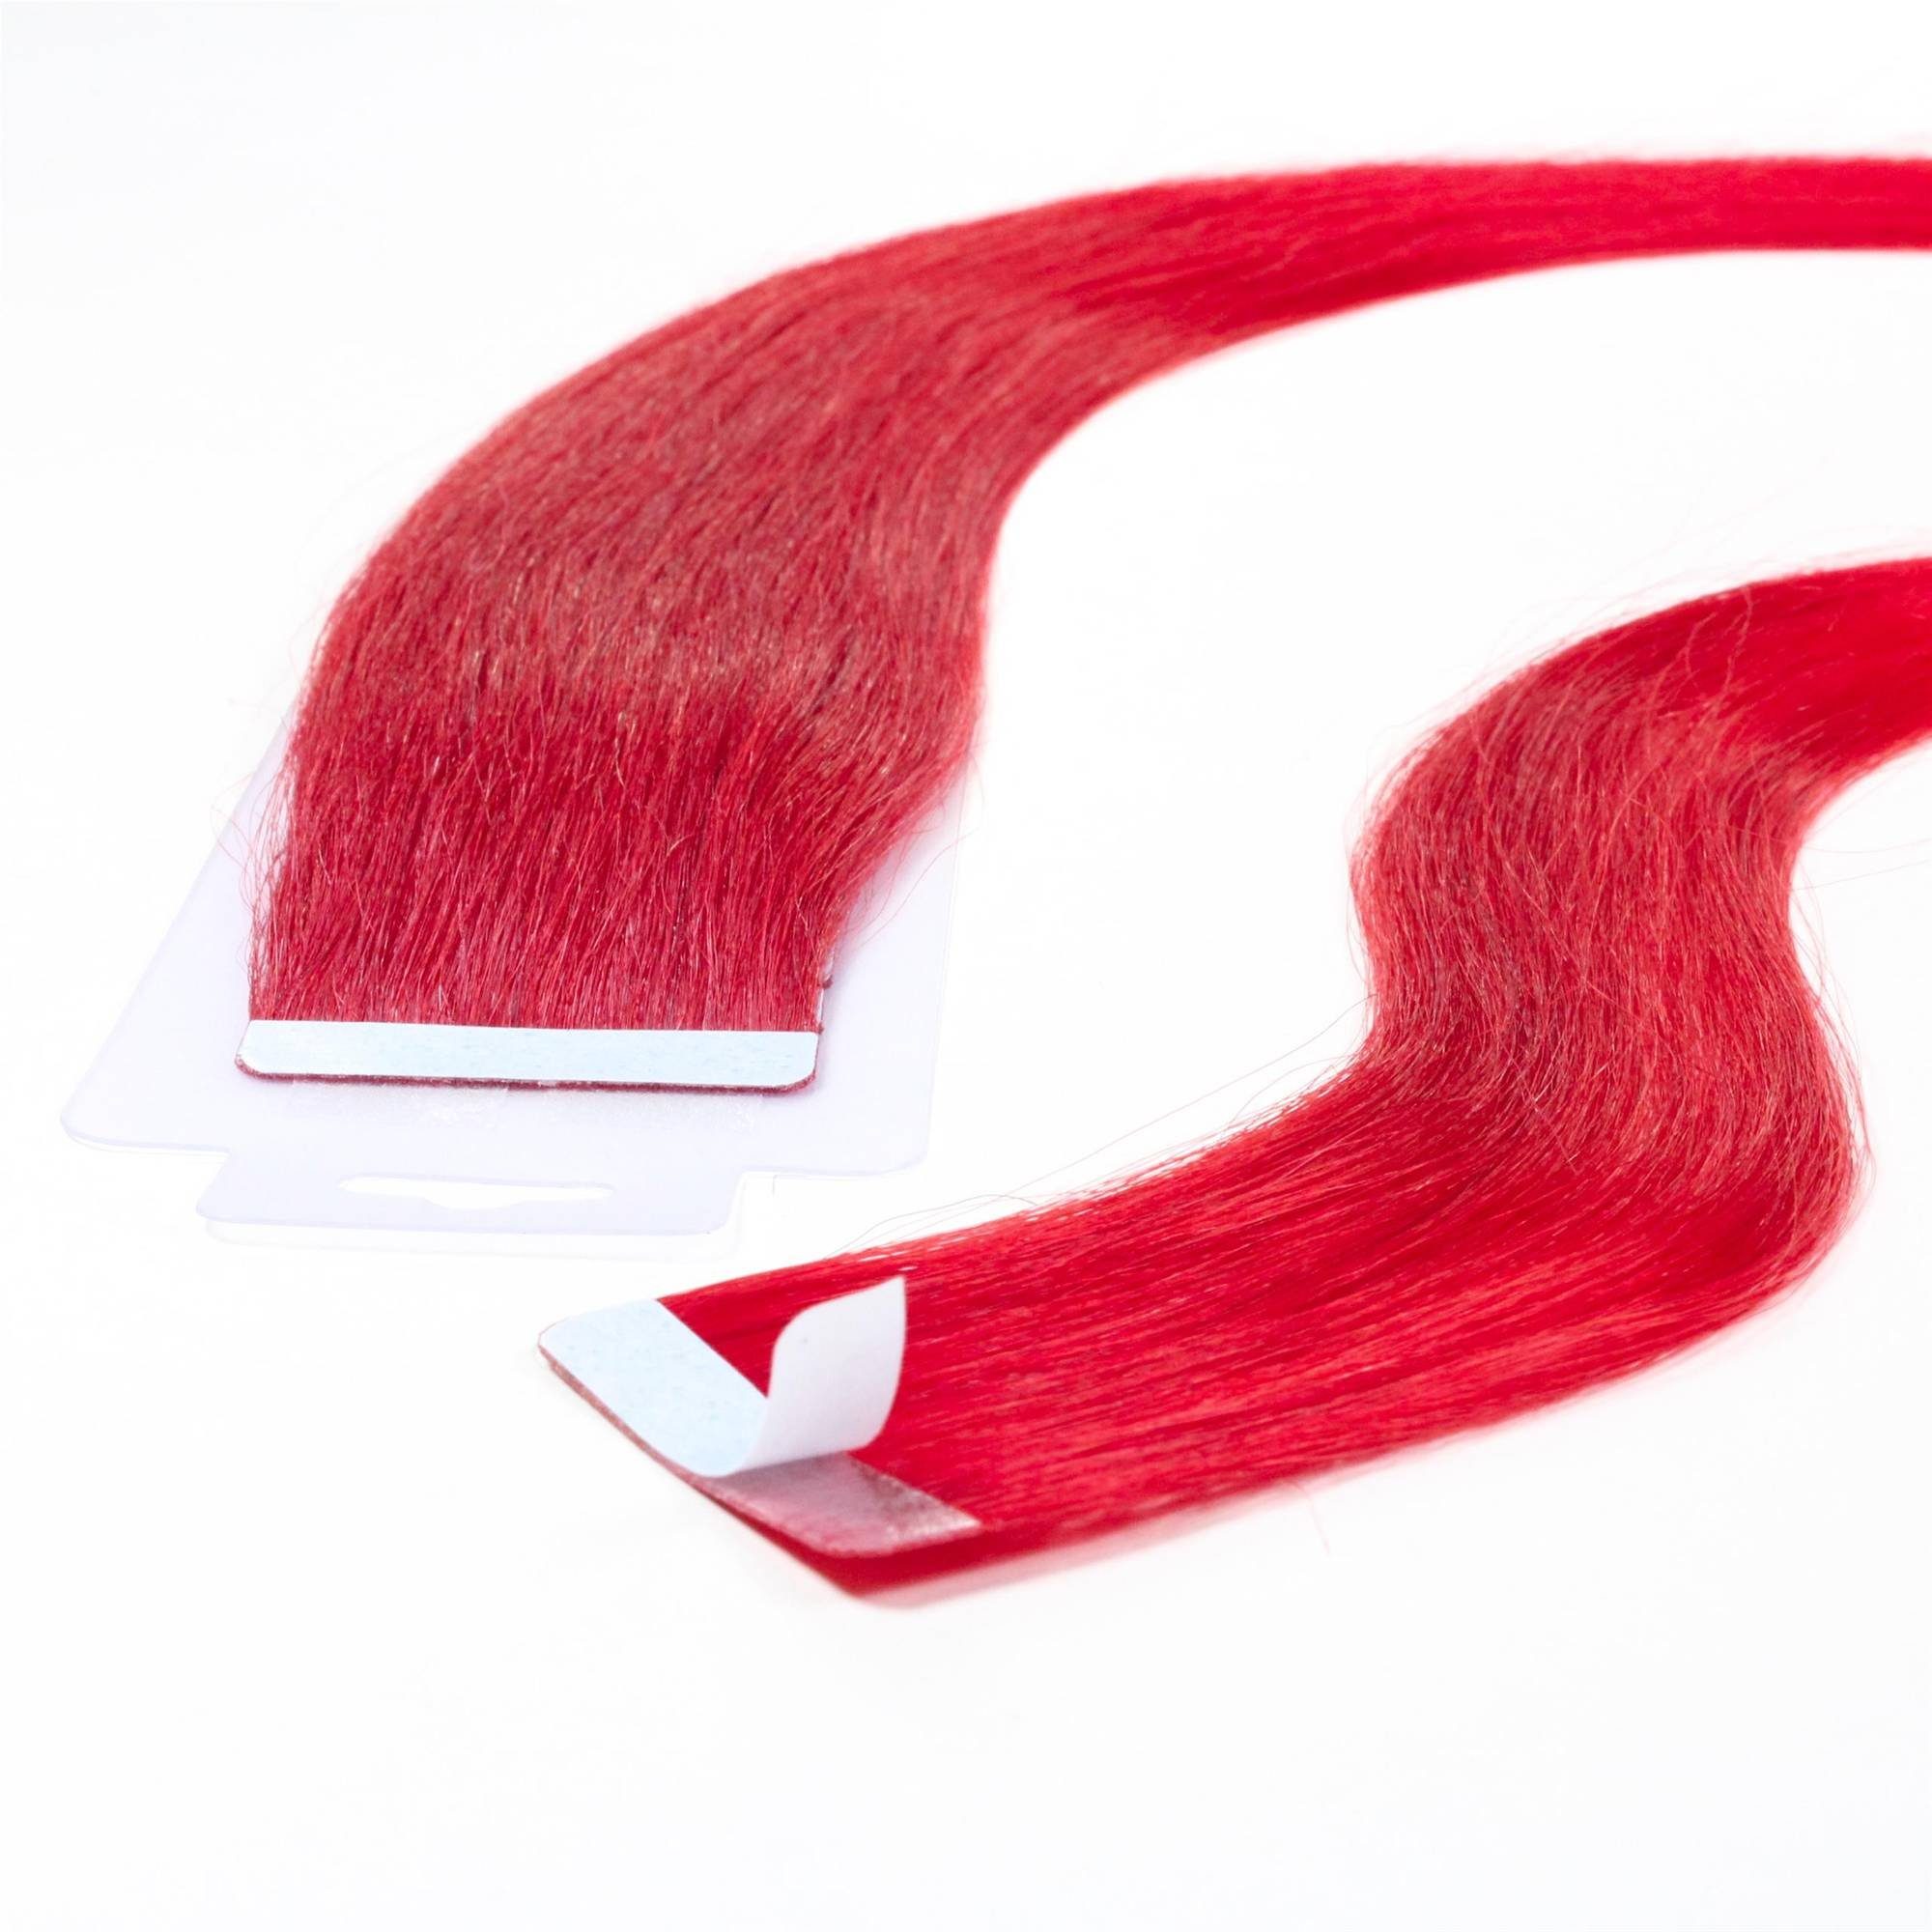 hair2heart Echthaar-Extension Tape Extensions glatt #0/44 Rot-Intensiv 40cm